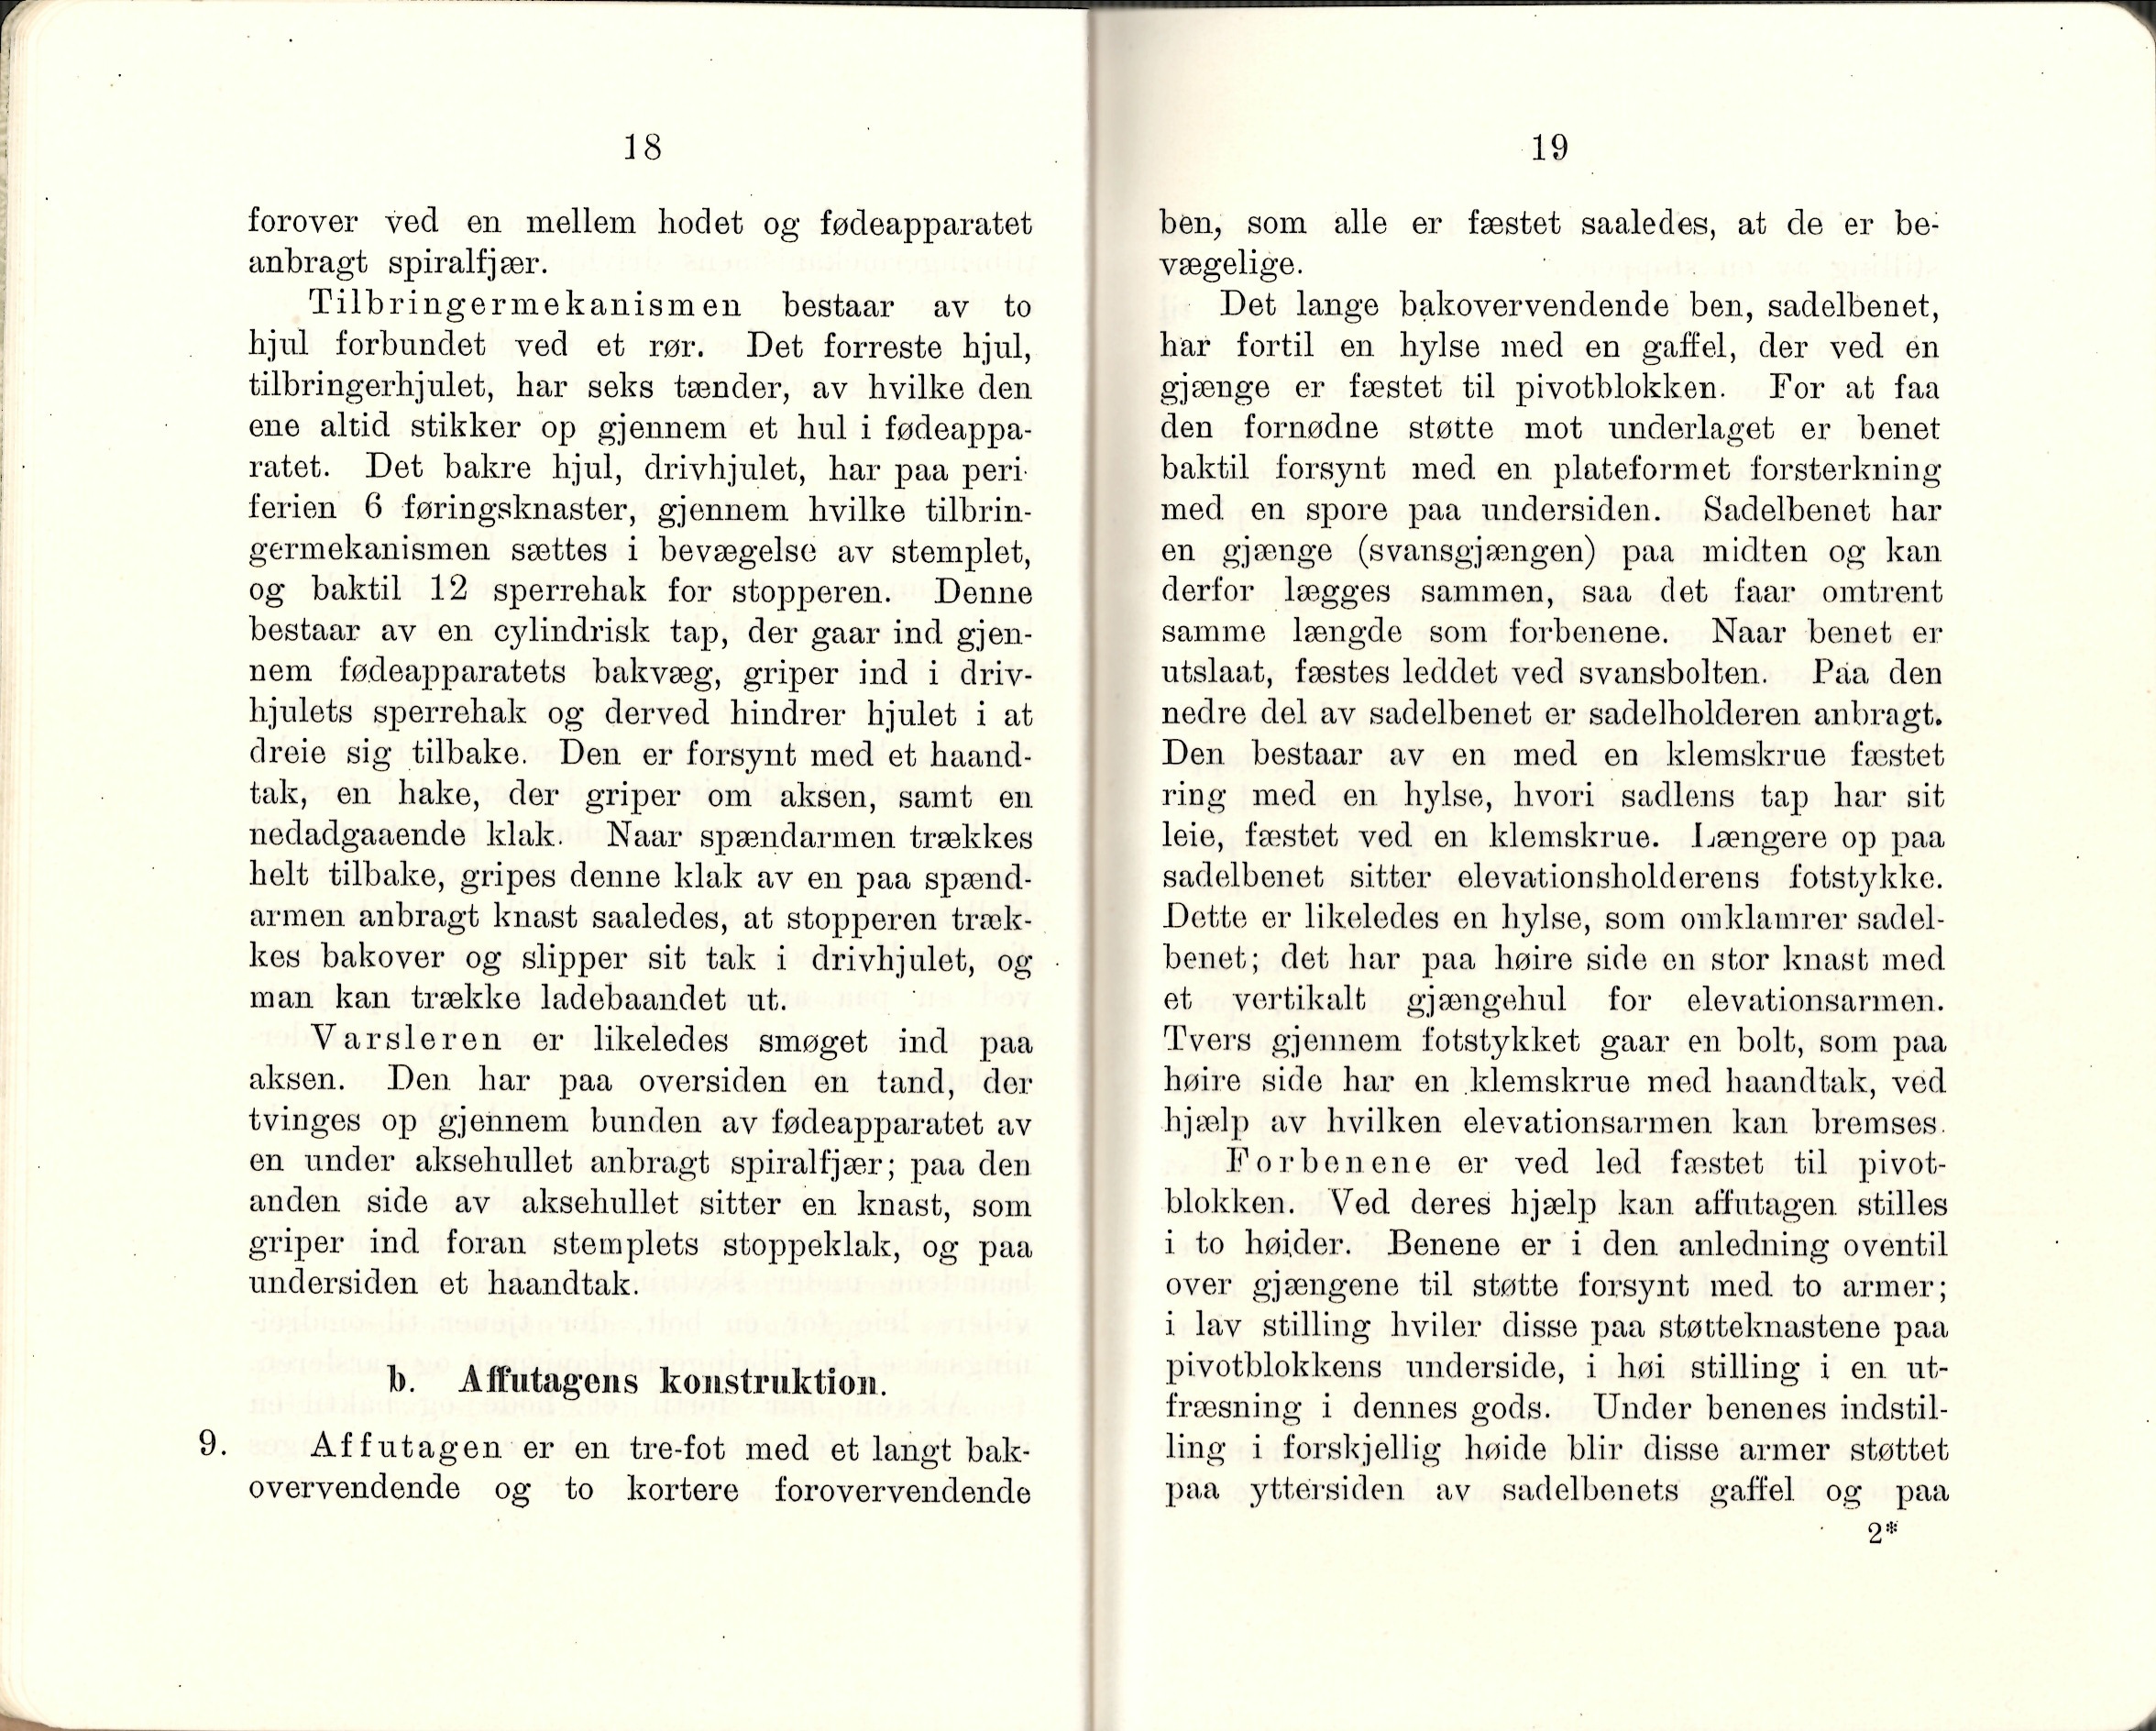 ./doc/reglement/Kav1910/Haandbok-Kav-Mitr-1910-11.jpg